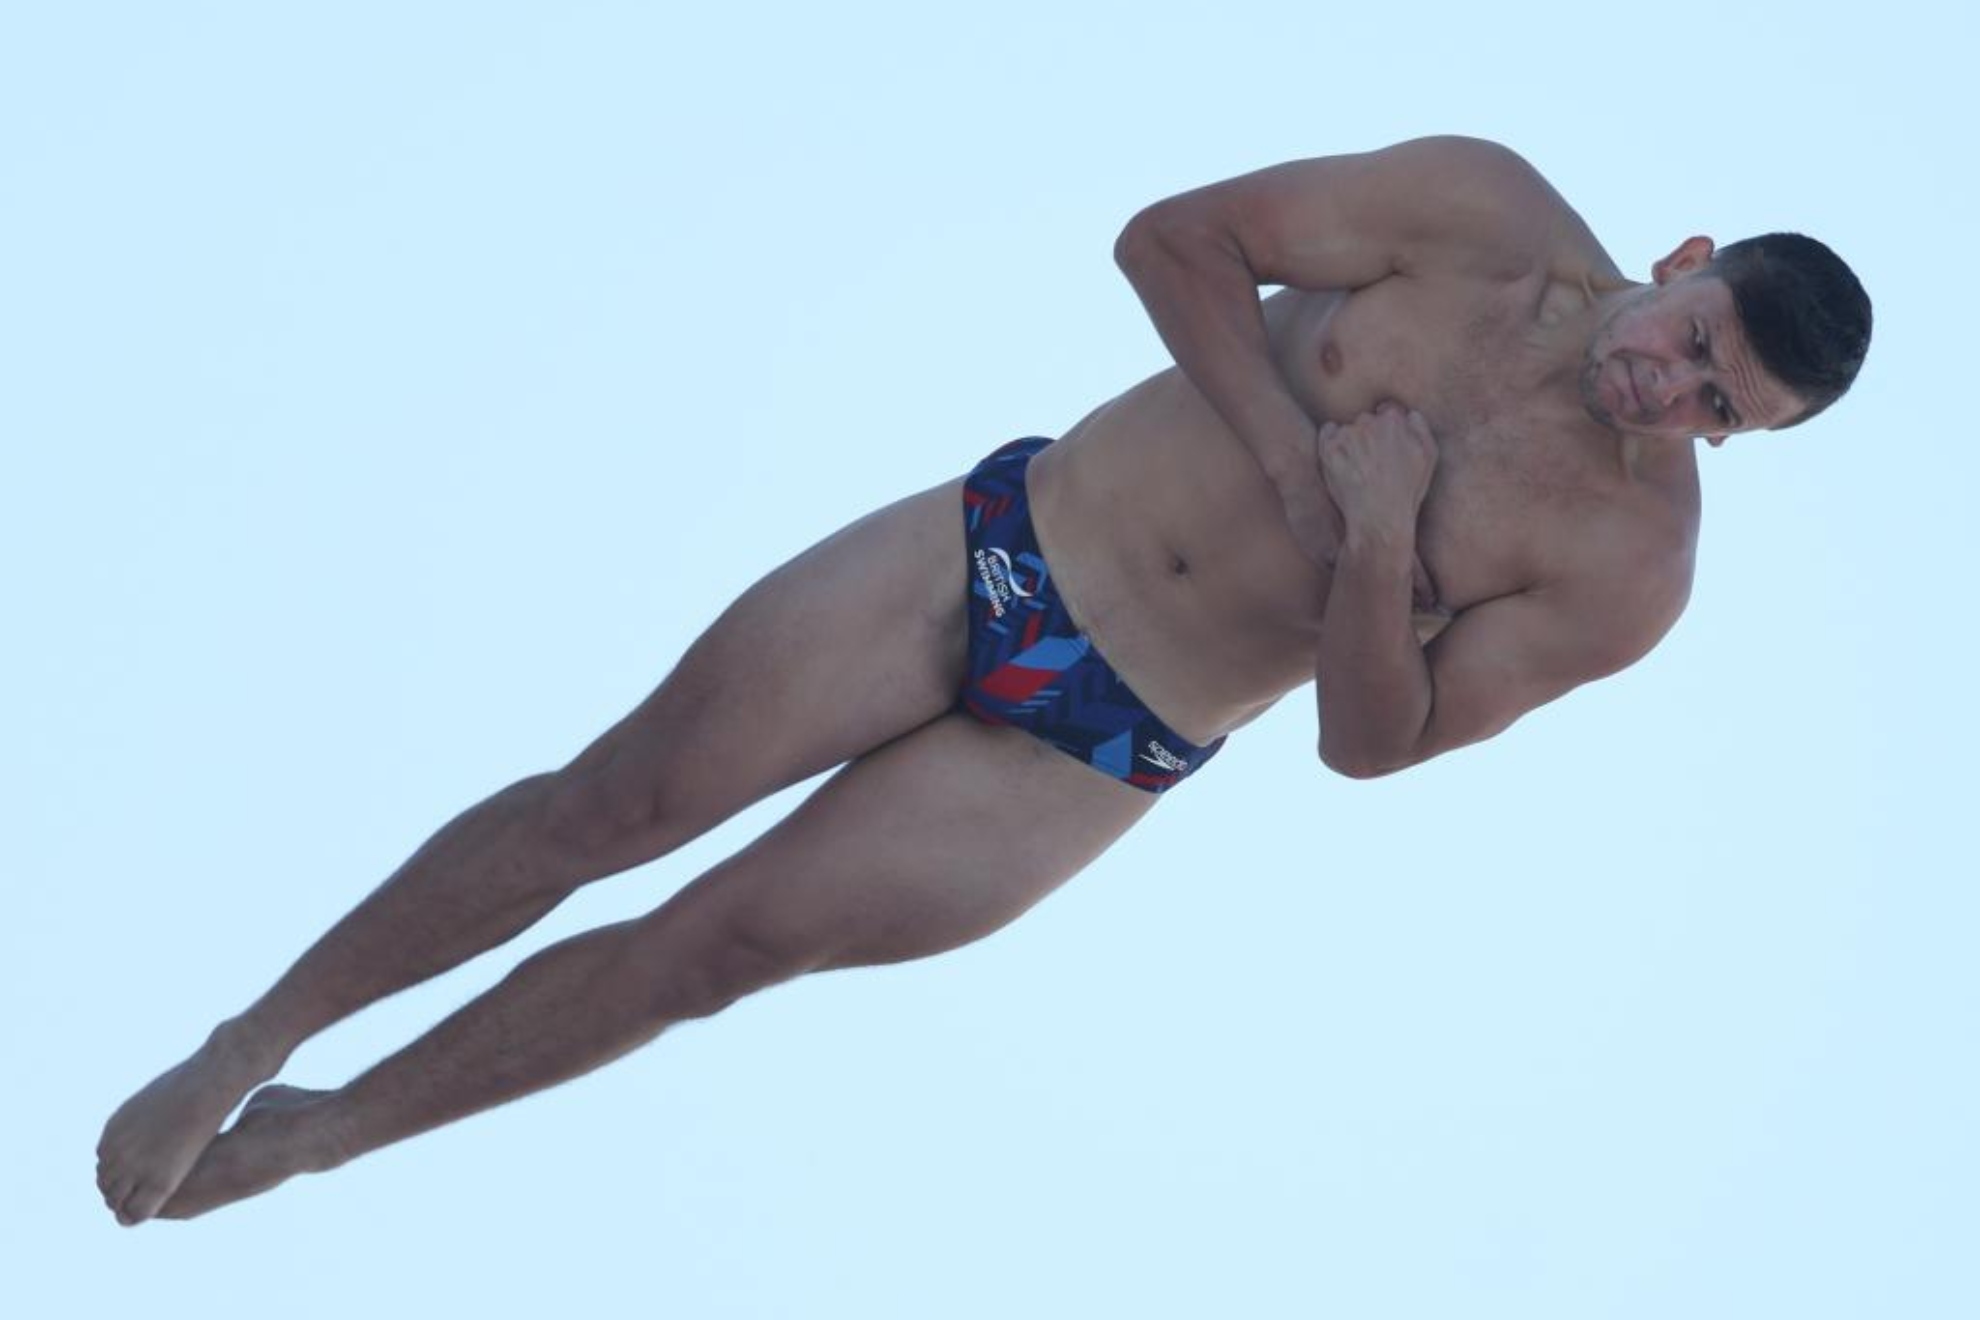 El ganador de high diving, Heslop, realizando un tirabuzón en uno de sus saltos